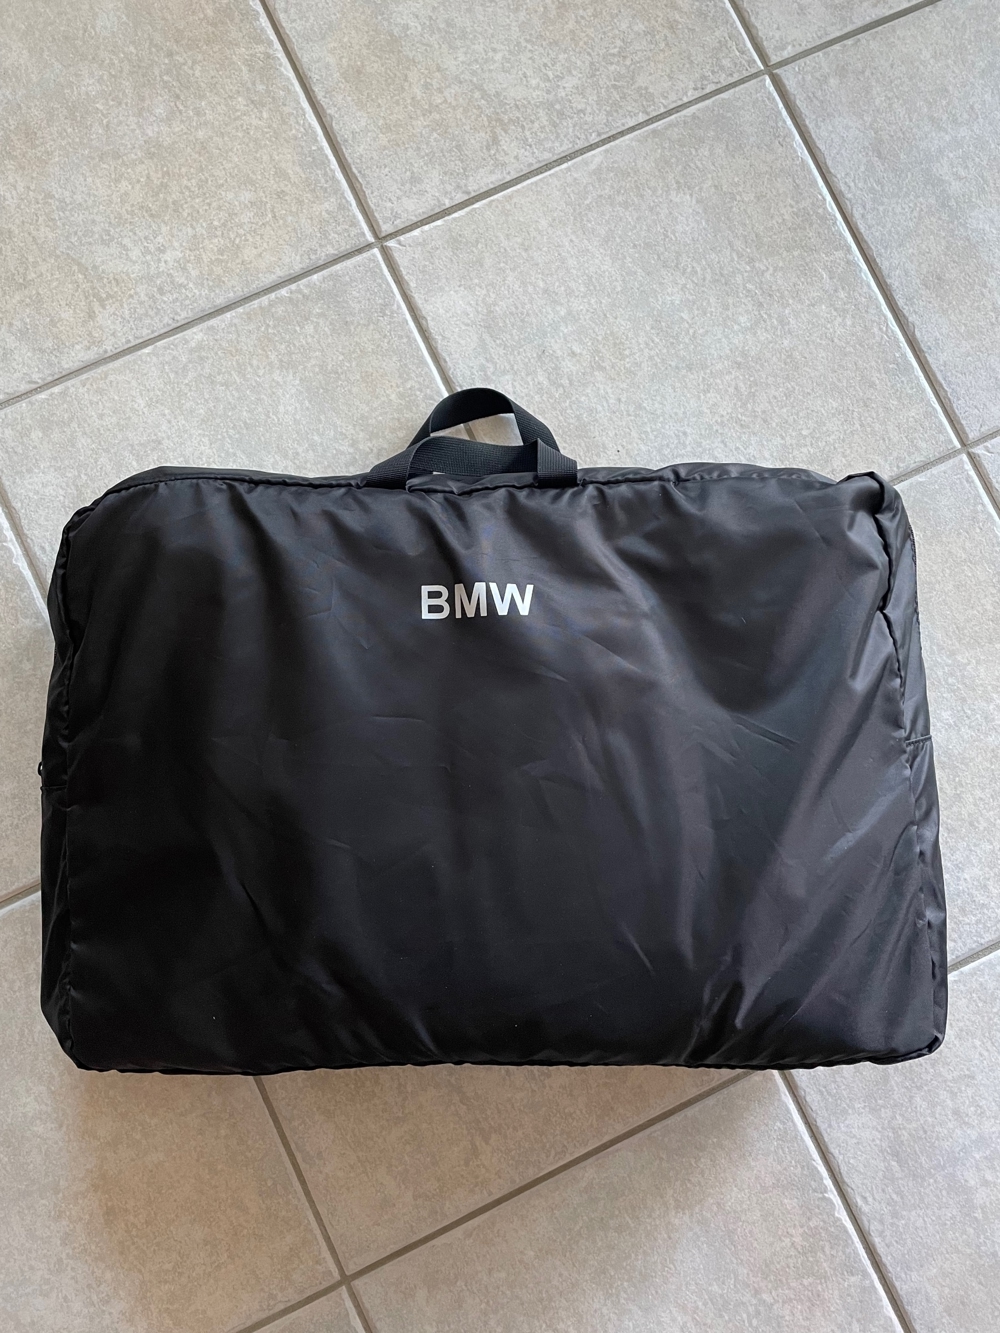 BMW Ski und Snowboard Tasche in Schutzhülle neu